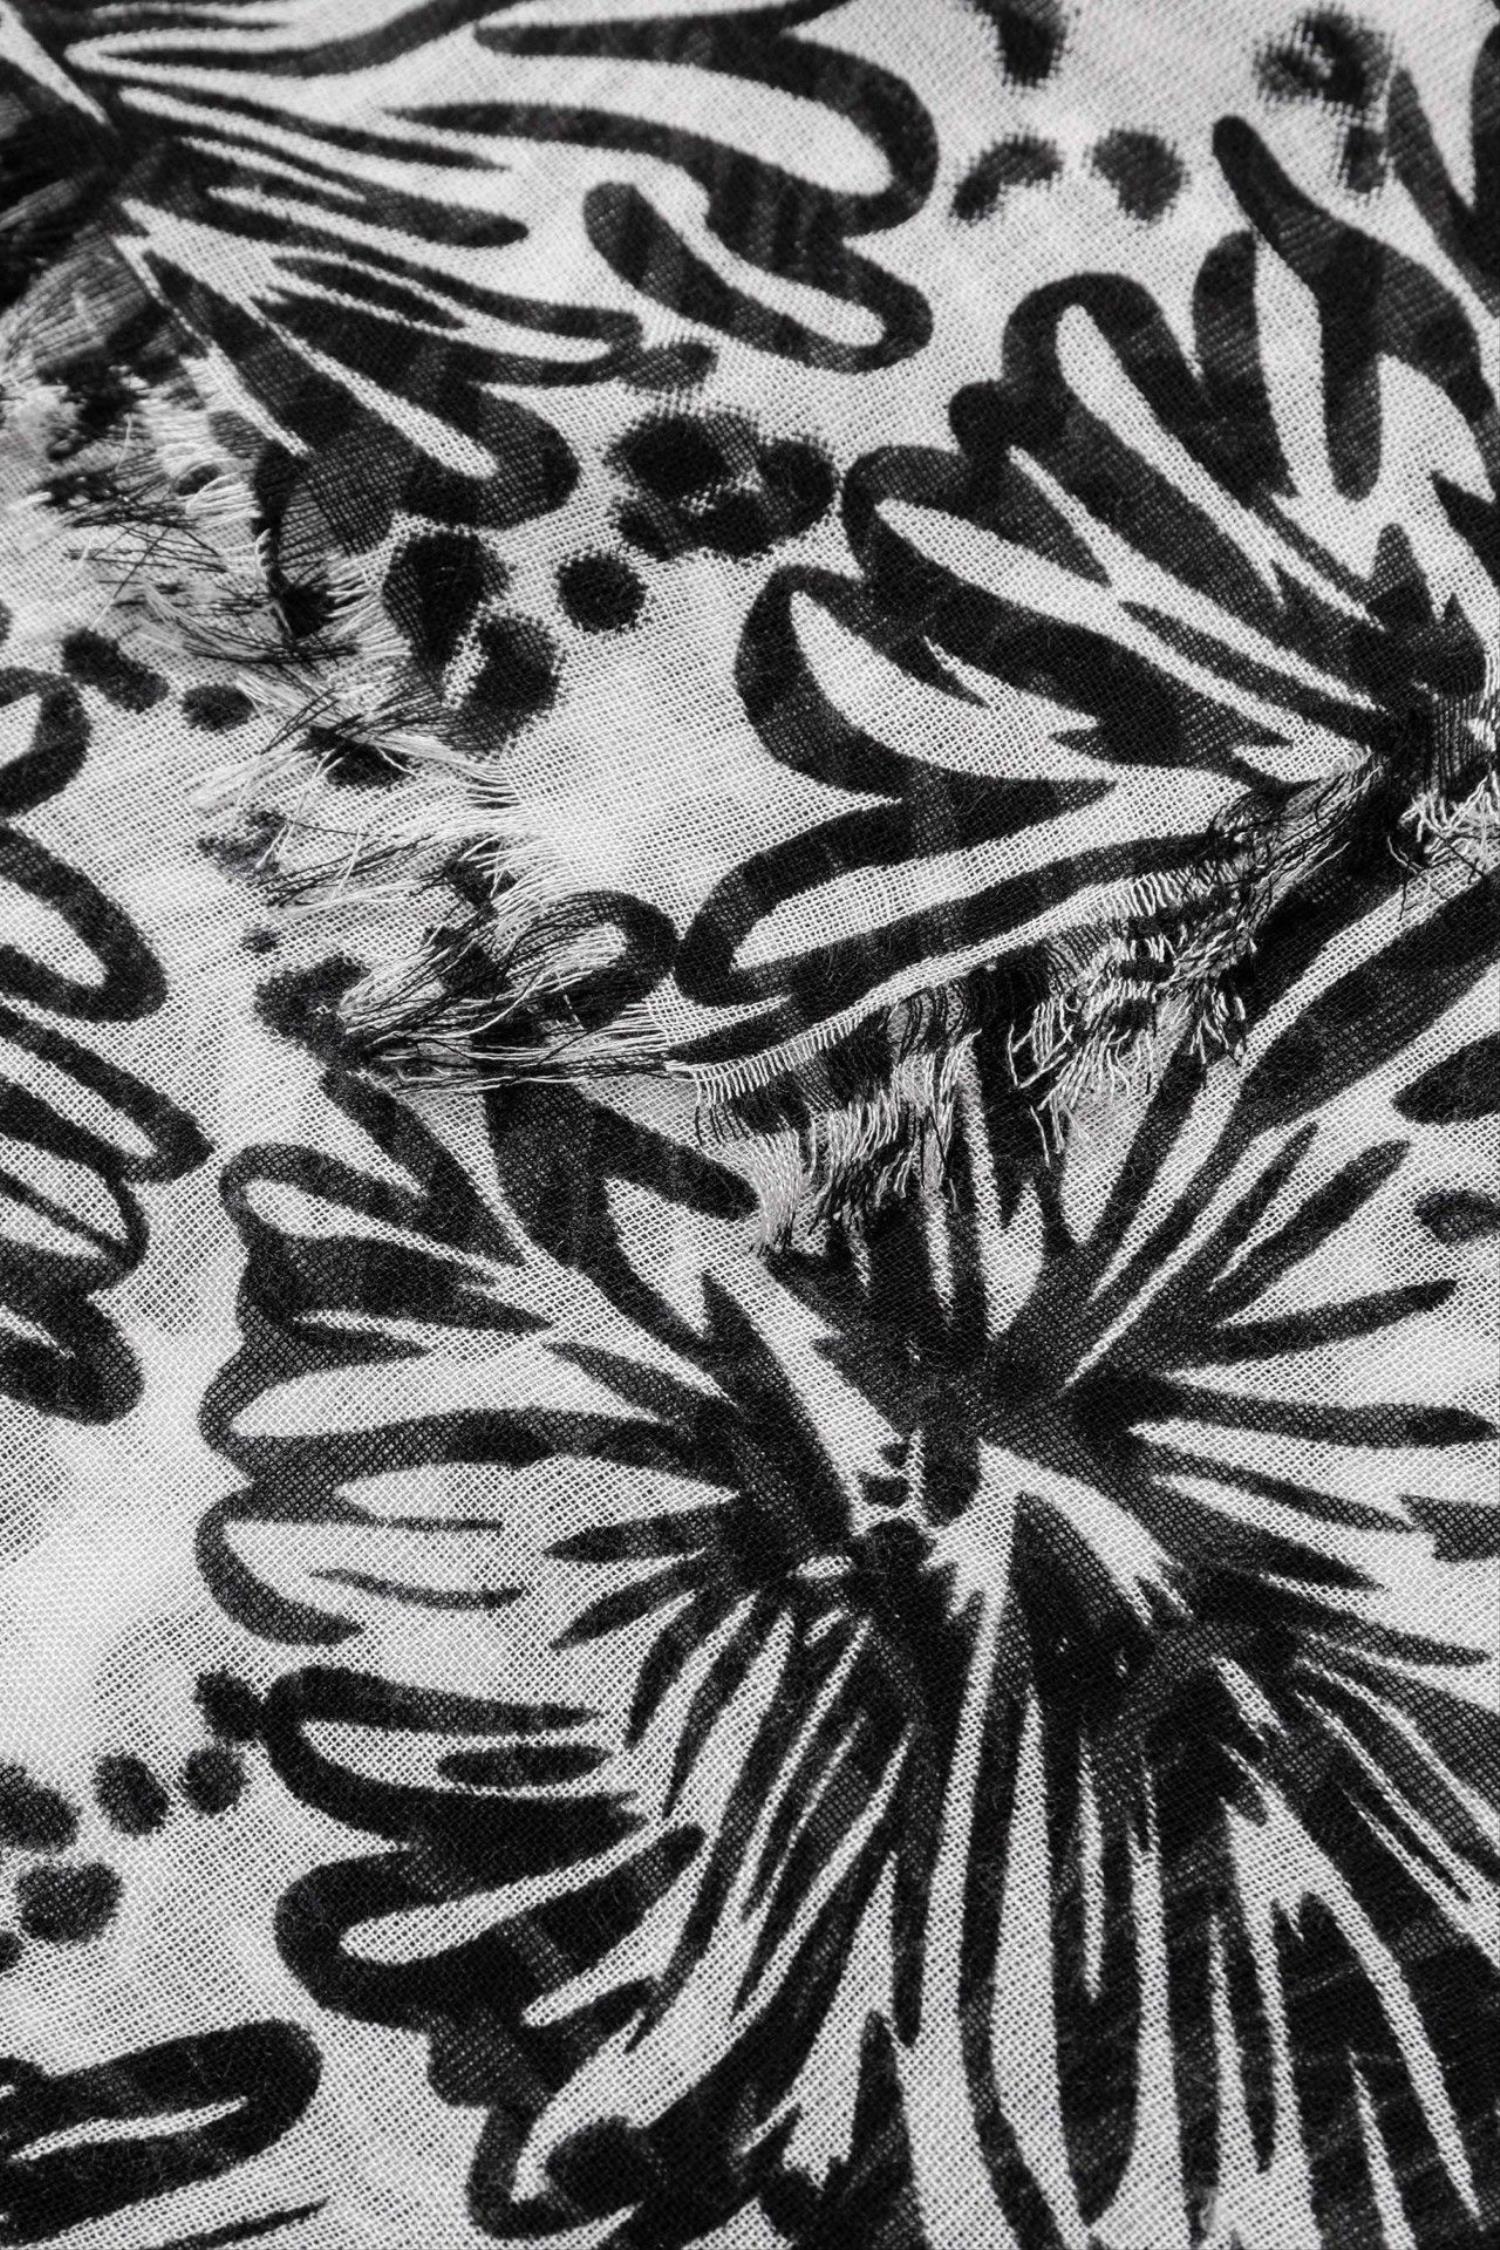 Pañuelo de flores en blanco y negro de la marca Vilanova con referencia 71004937_000.